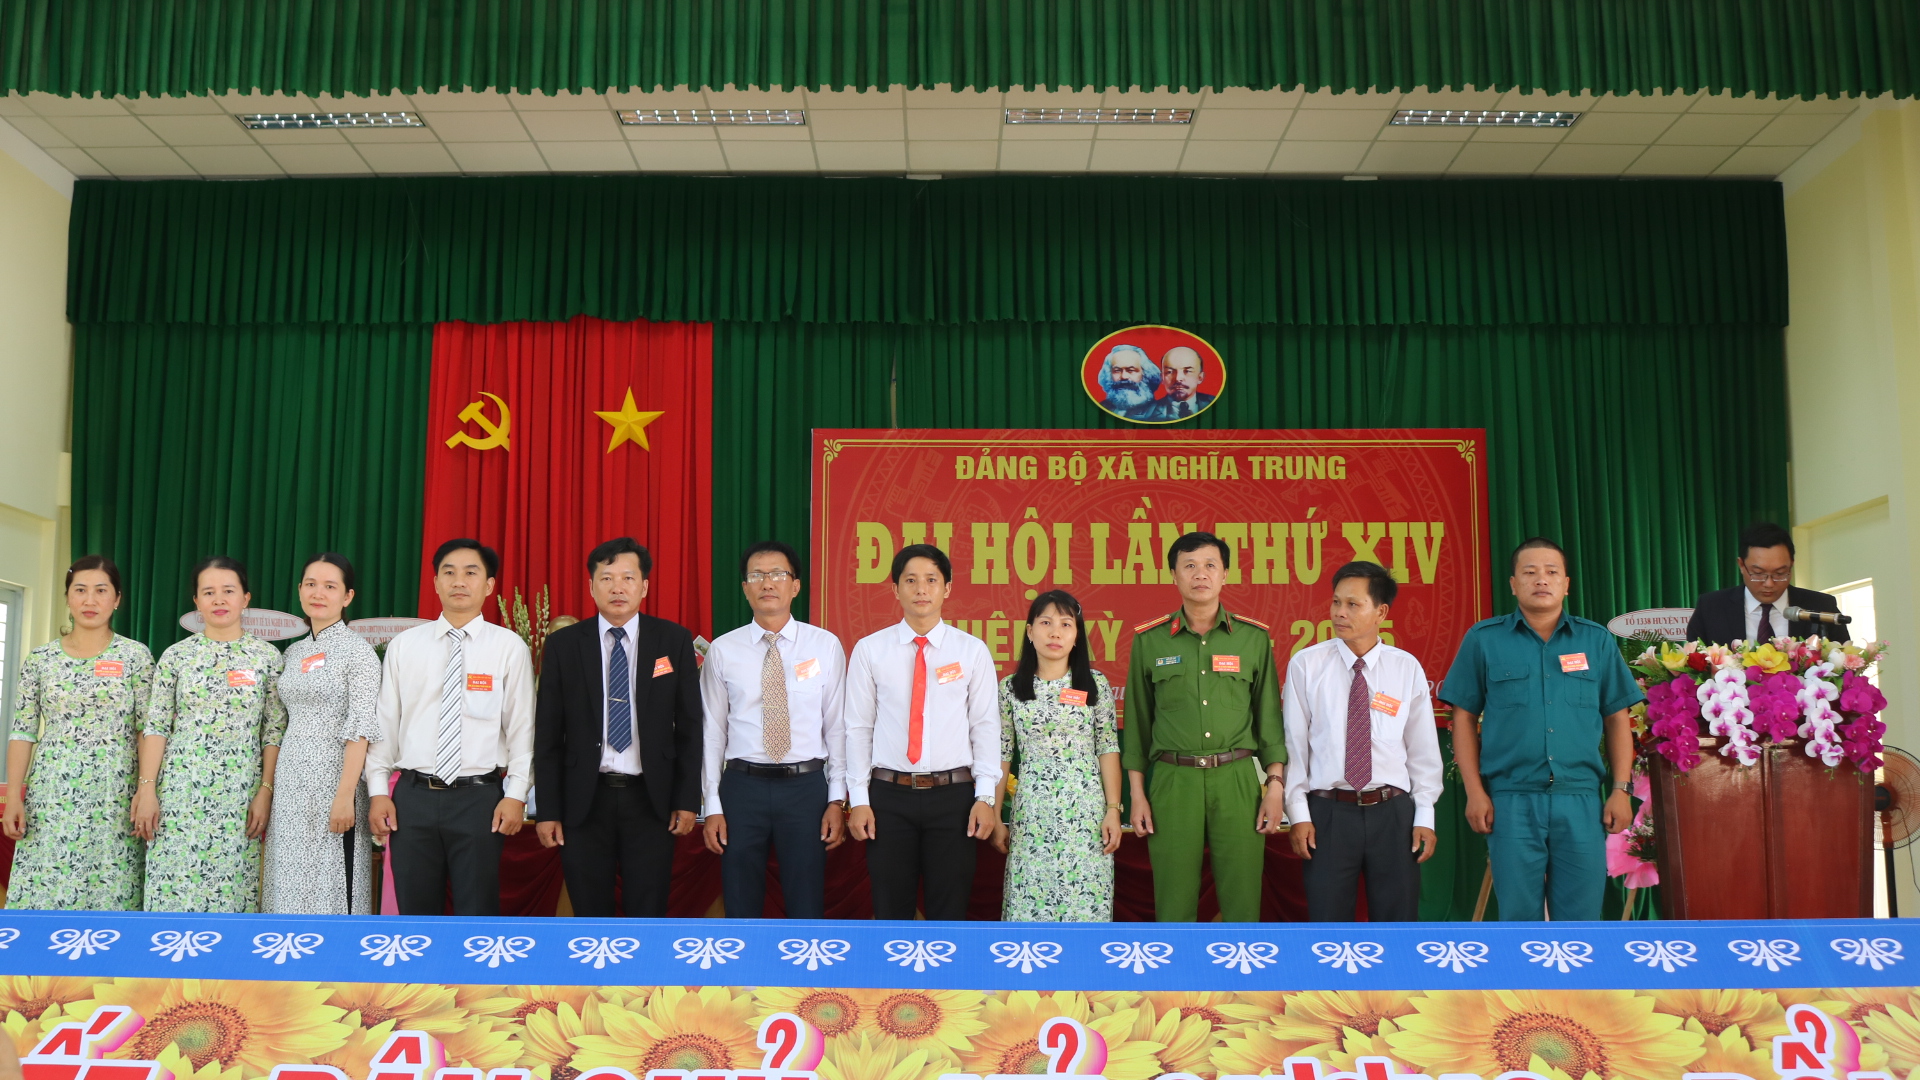 Đảng bộ xã Nghĩa Trung tổ chức thành công Đại hội lần thứ XIV, nhiệm kỳ 2020 - 2025